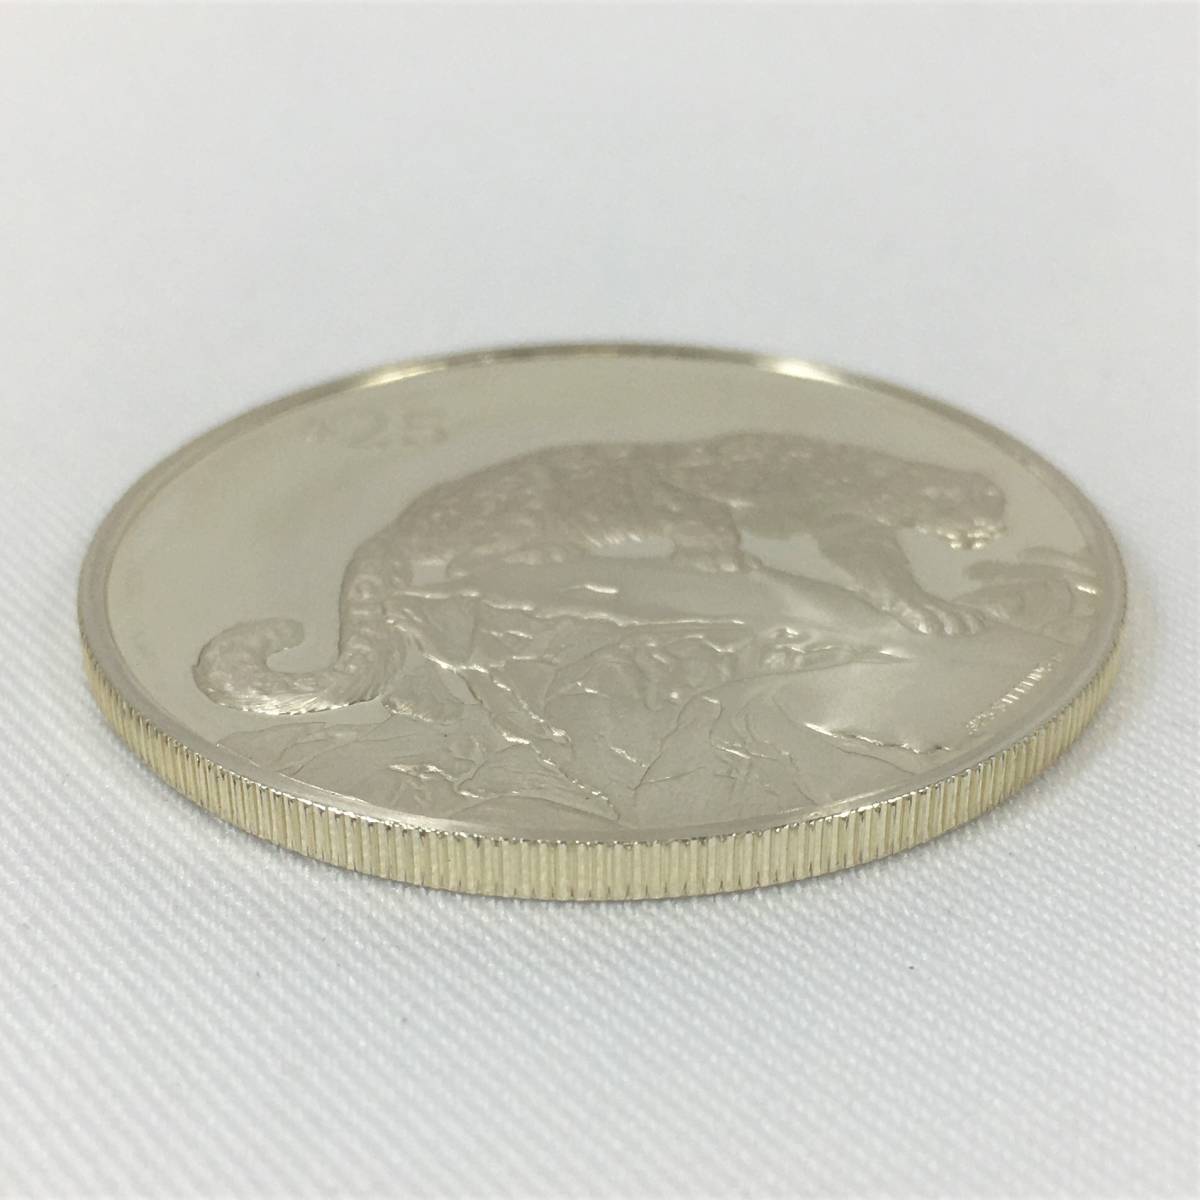 イギリス領ヴァージン諸島 25ドル 銀貨 1993年 ユキヒョウ SV925 プルーフ コイン 硬貨 エリザベス女王 英領バージン諸島 ケース付の画像3